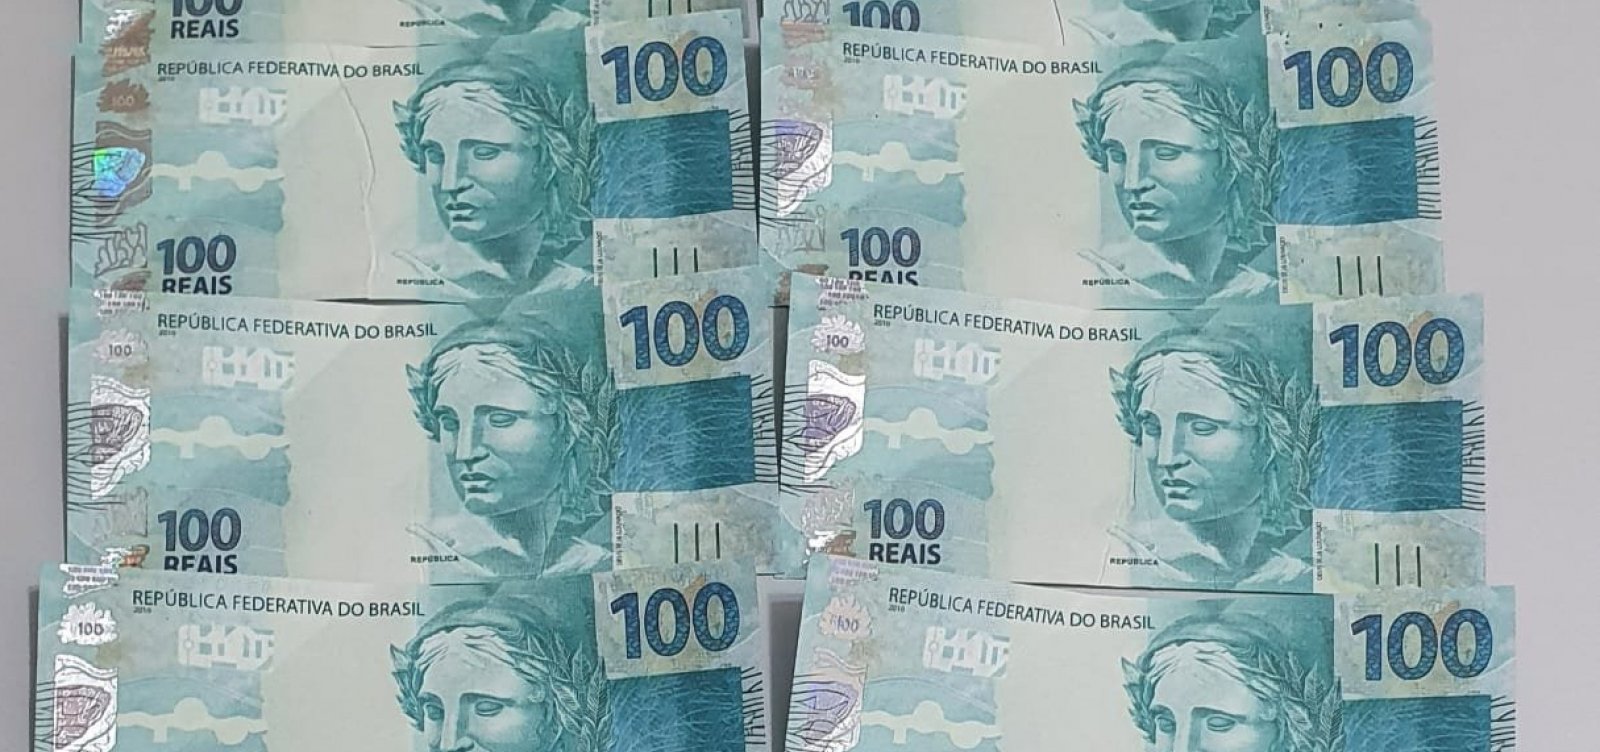 Polícia Militar apreende R$ 1100 em cédulas falsas nos Correios, em Feira de Santana 